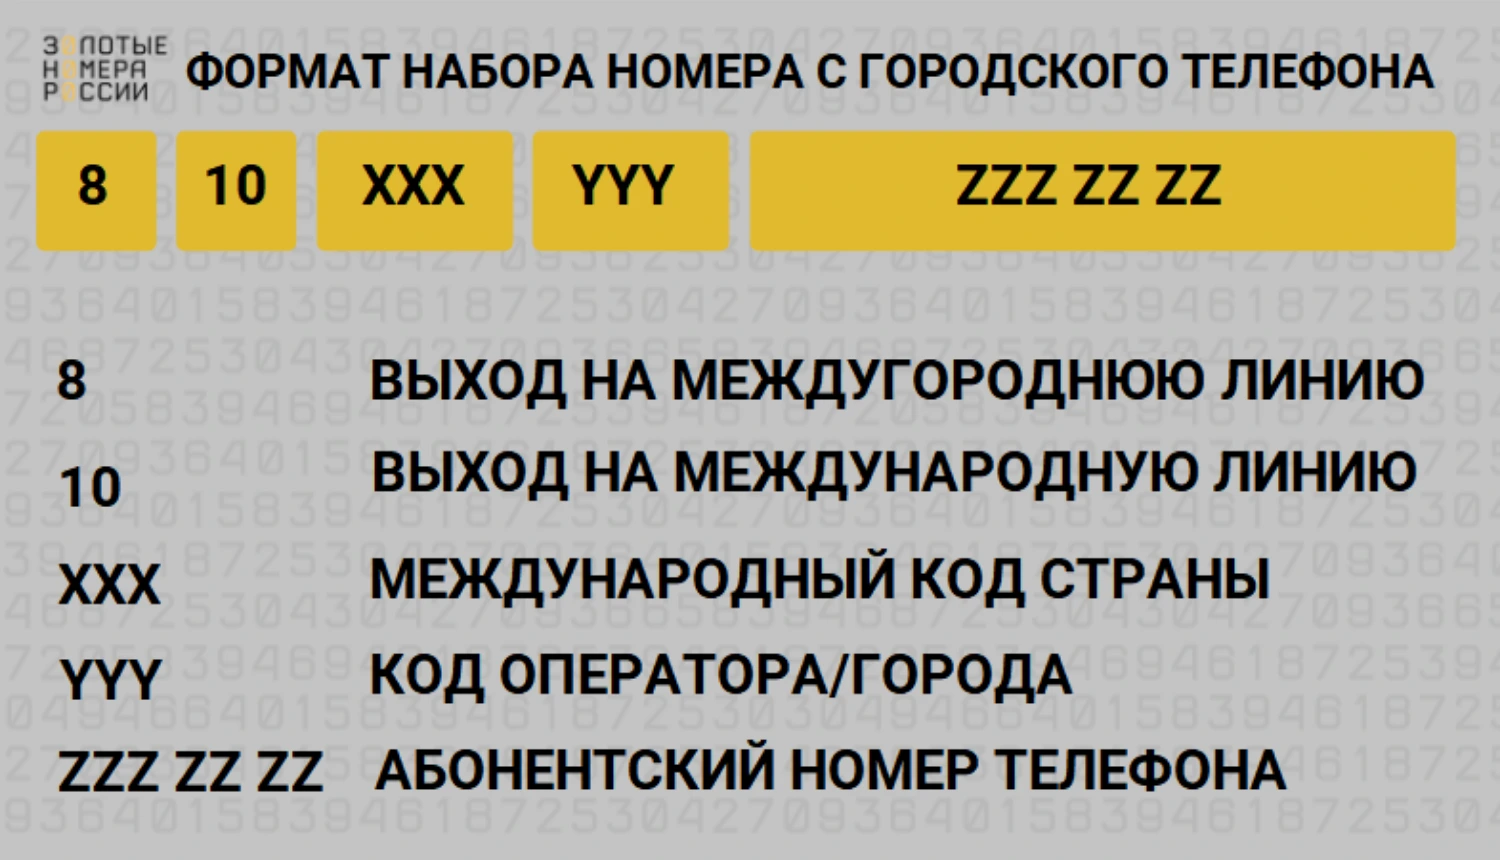 Правила набора номере с городского телефона в России